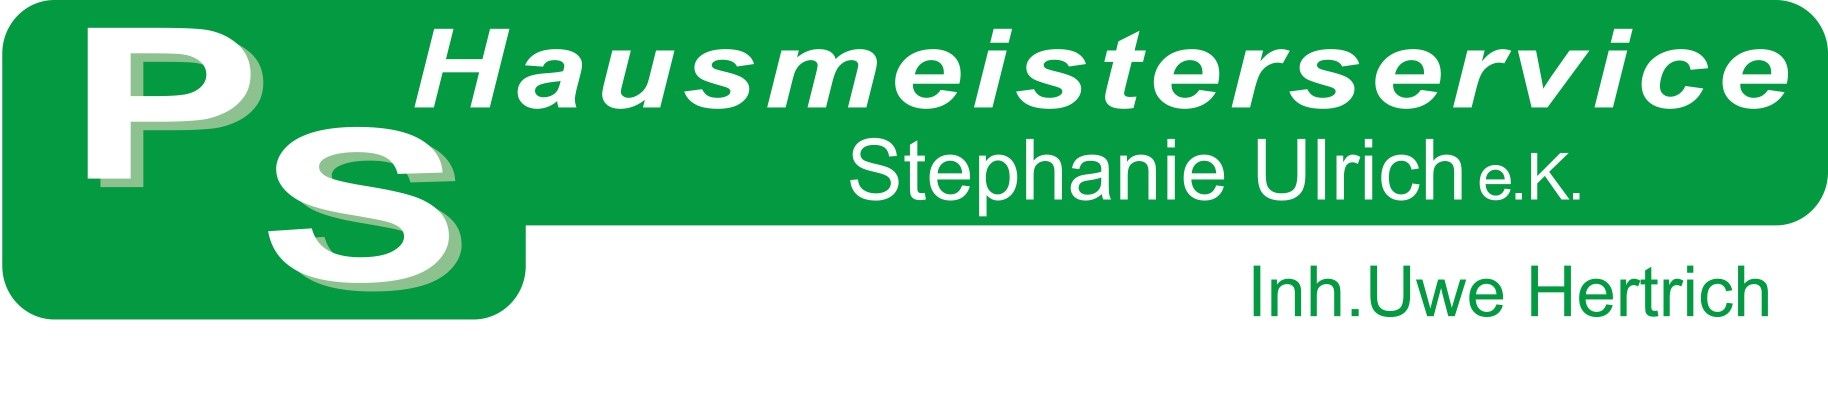 PS Hausmeisterservice-Stephanie-Ulrich e.K. (Inhaber Uwe Hertrich)-logo